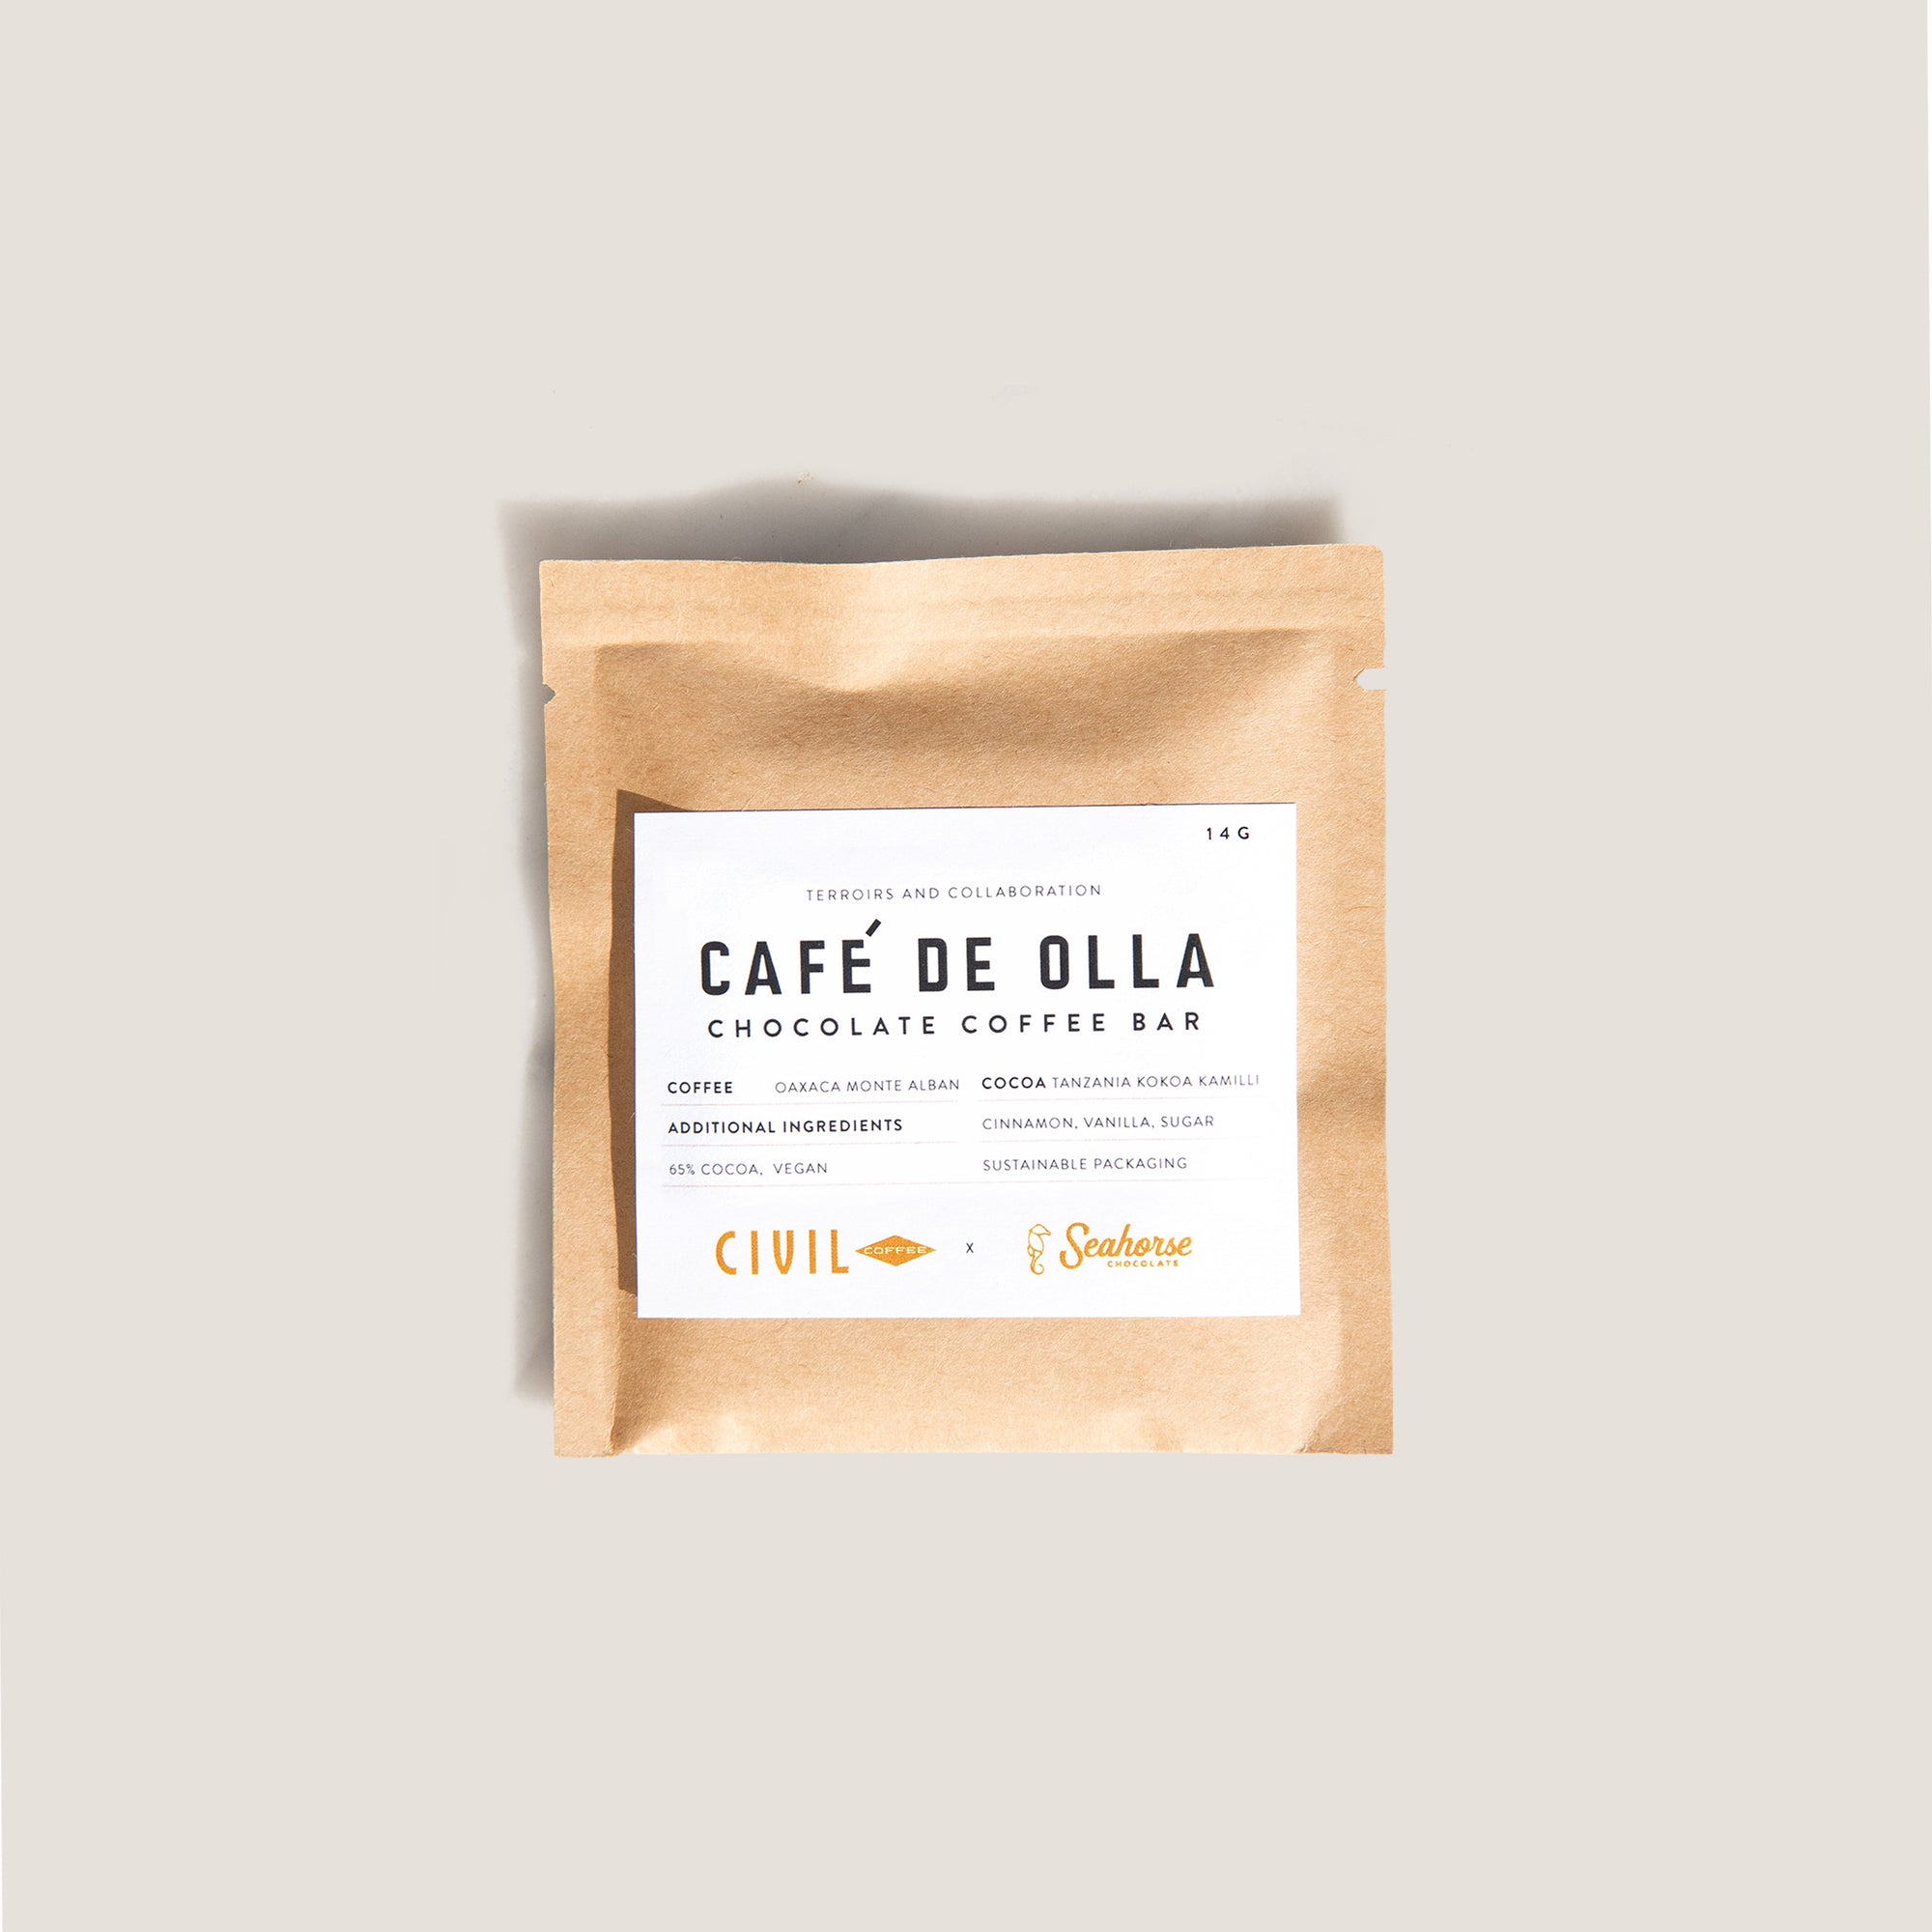 Cafe de Olla Chocolate